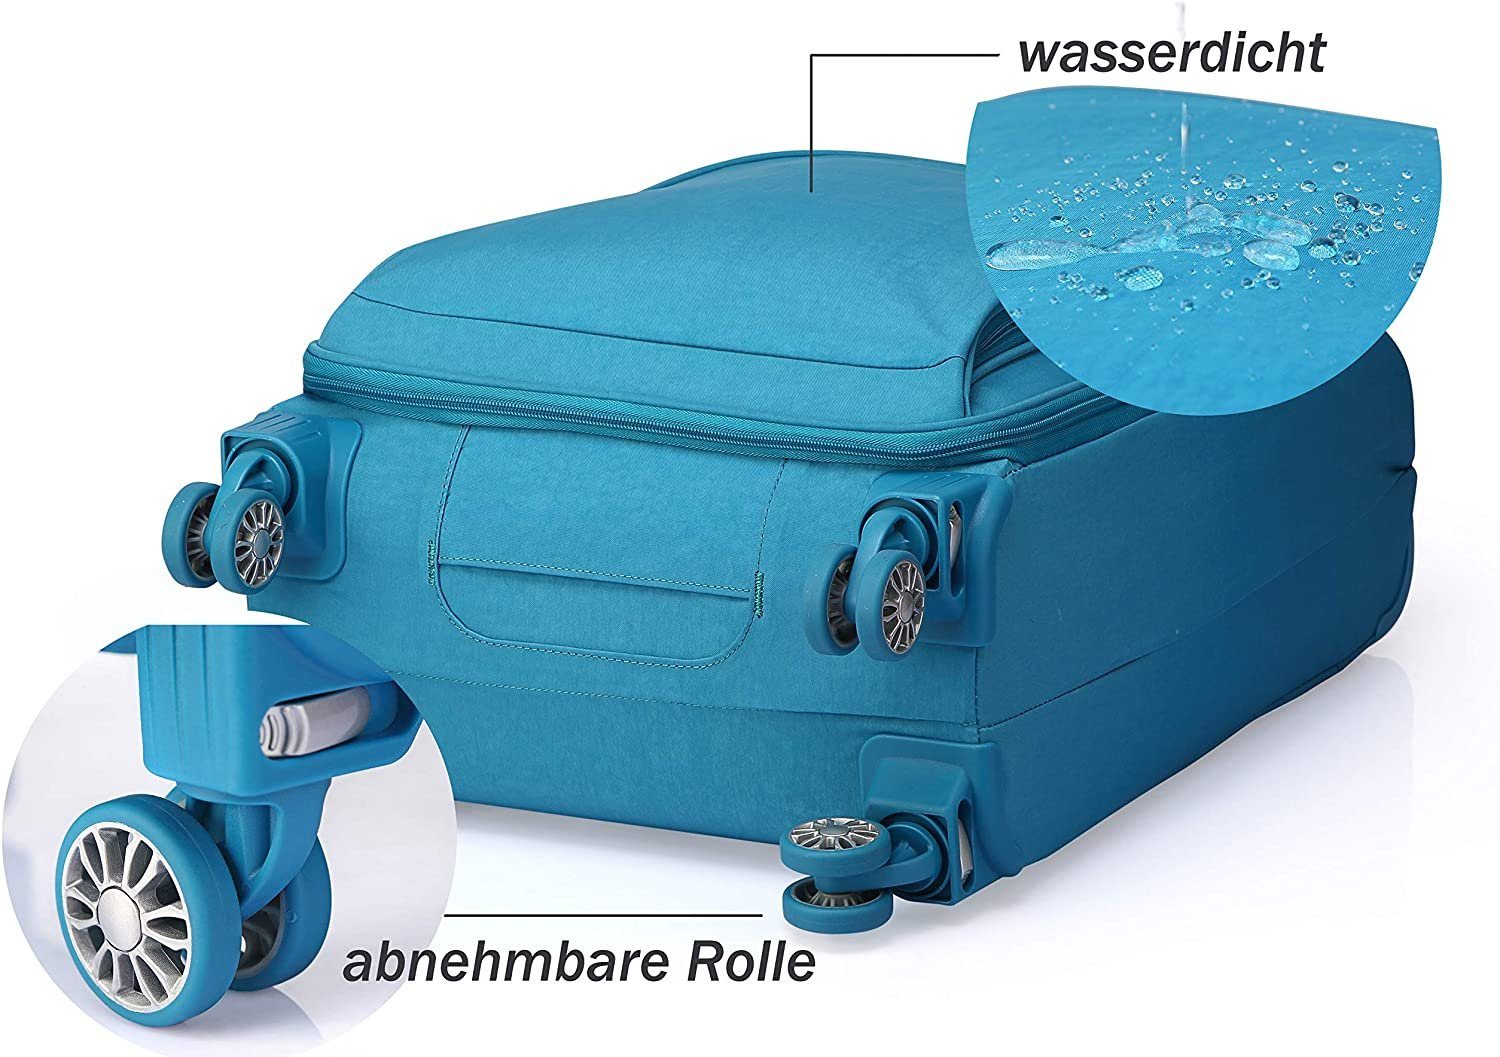 OUBO Koffer Doppelrollen Handgepäck-Koffer abnehmbar mit funktionaler Blau zusammenfaltbar Gratis wasserdicht, 4 Aufbewahrungstasche, Trolley Verage